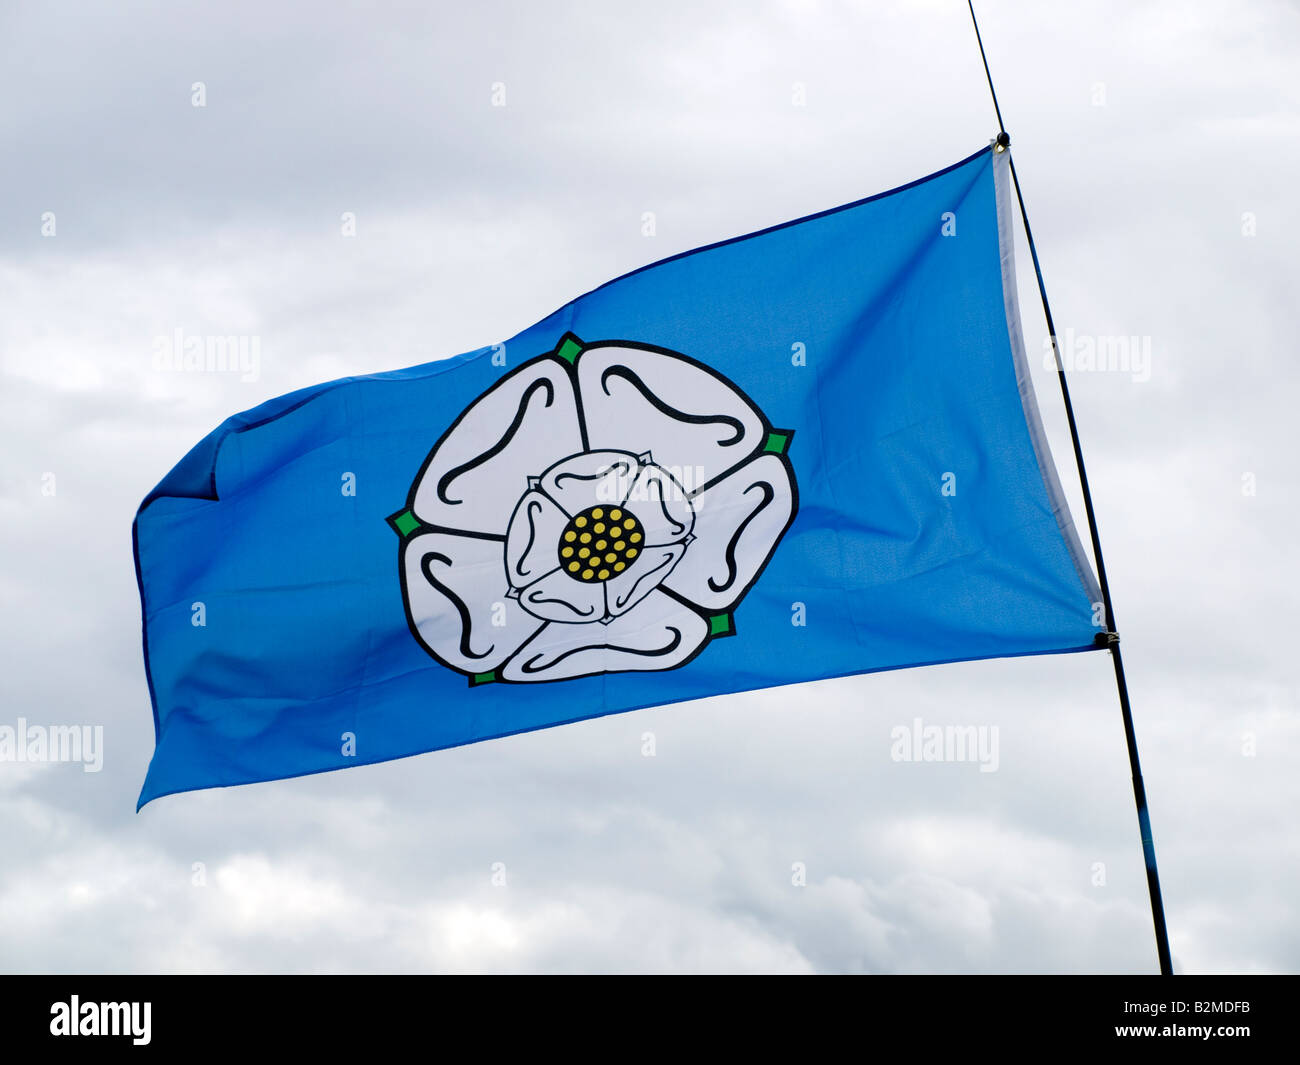 Gazzetta Yorkshire County bandiera con una rosa bianca su fondo blu Foto Stock